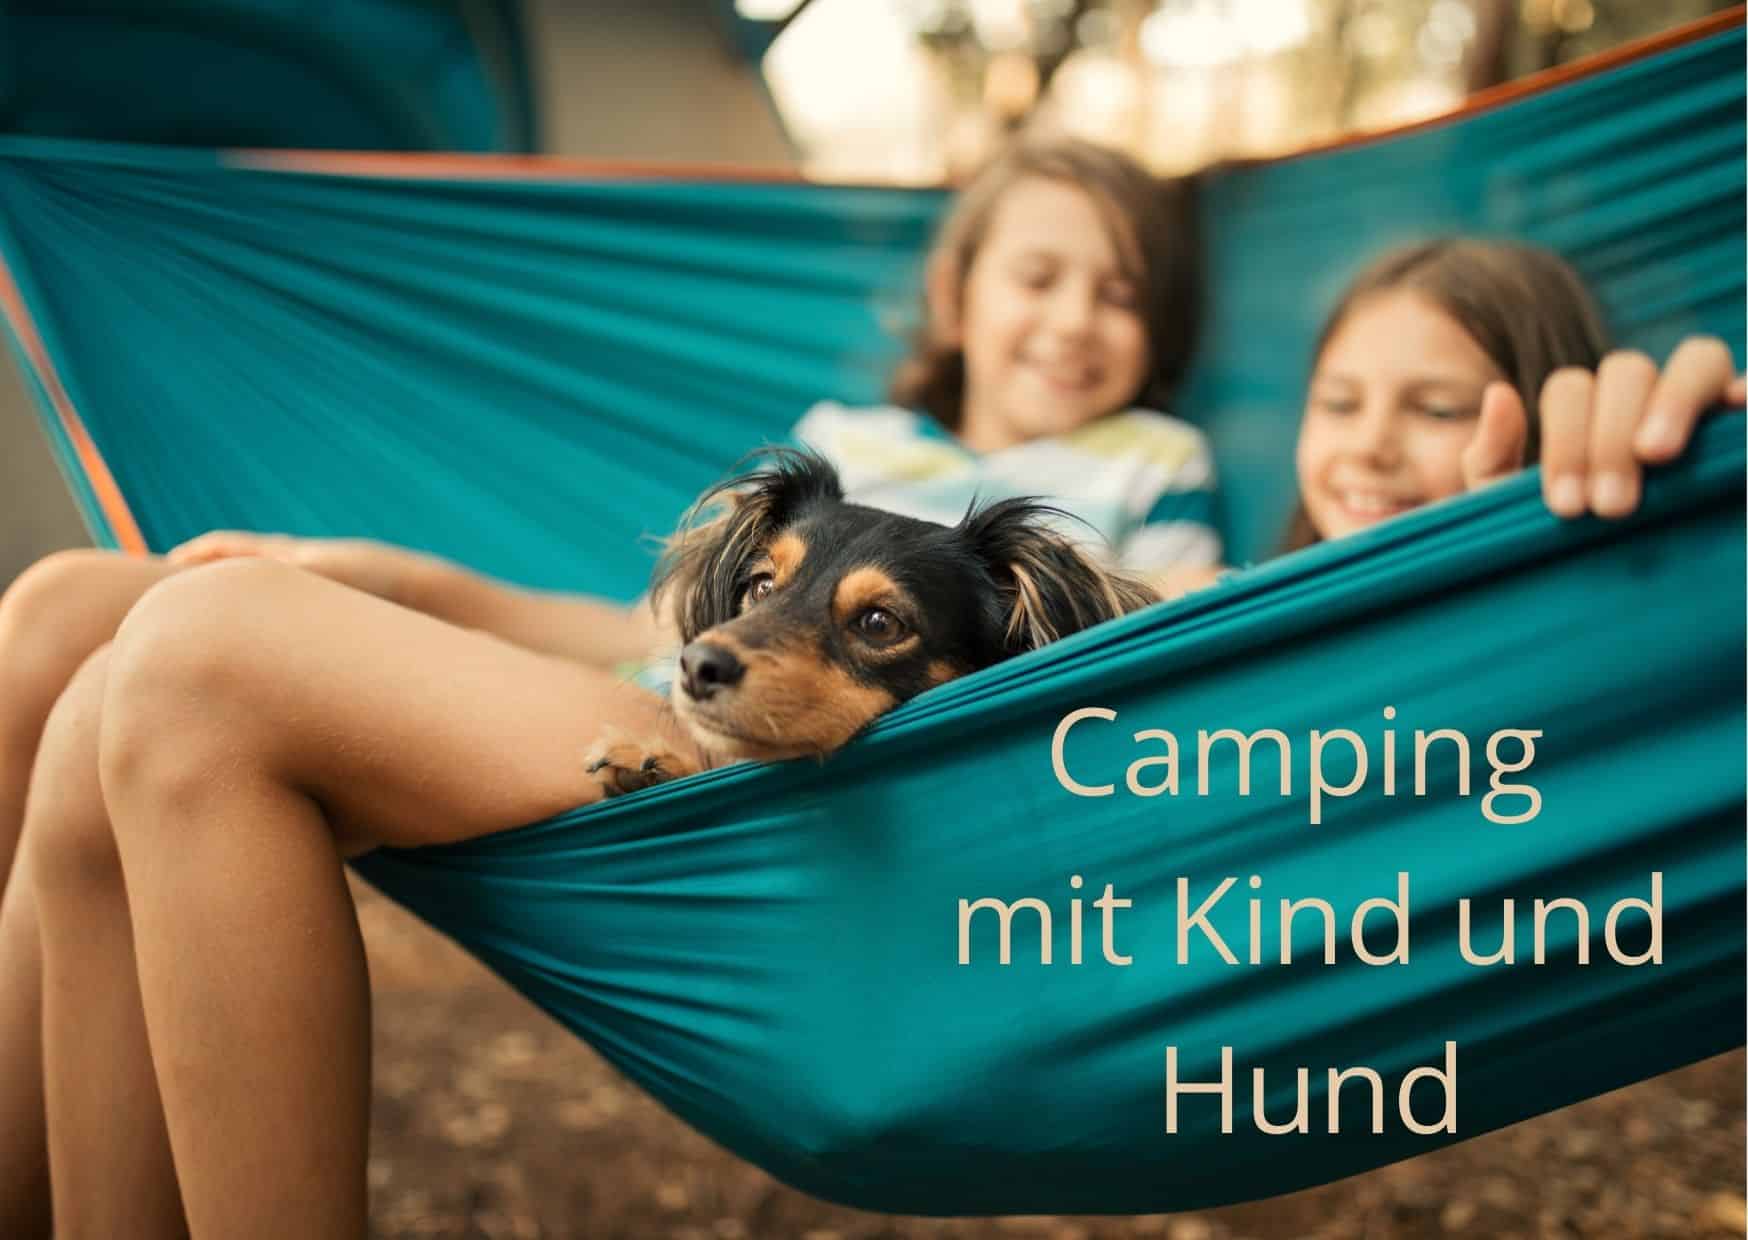 Camping und Hund - Camping mit Kind